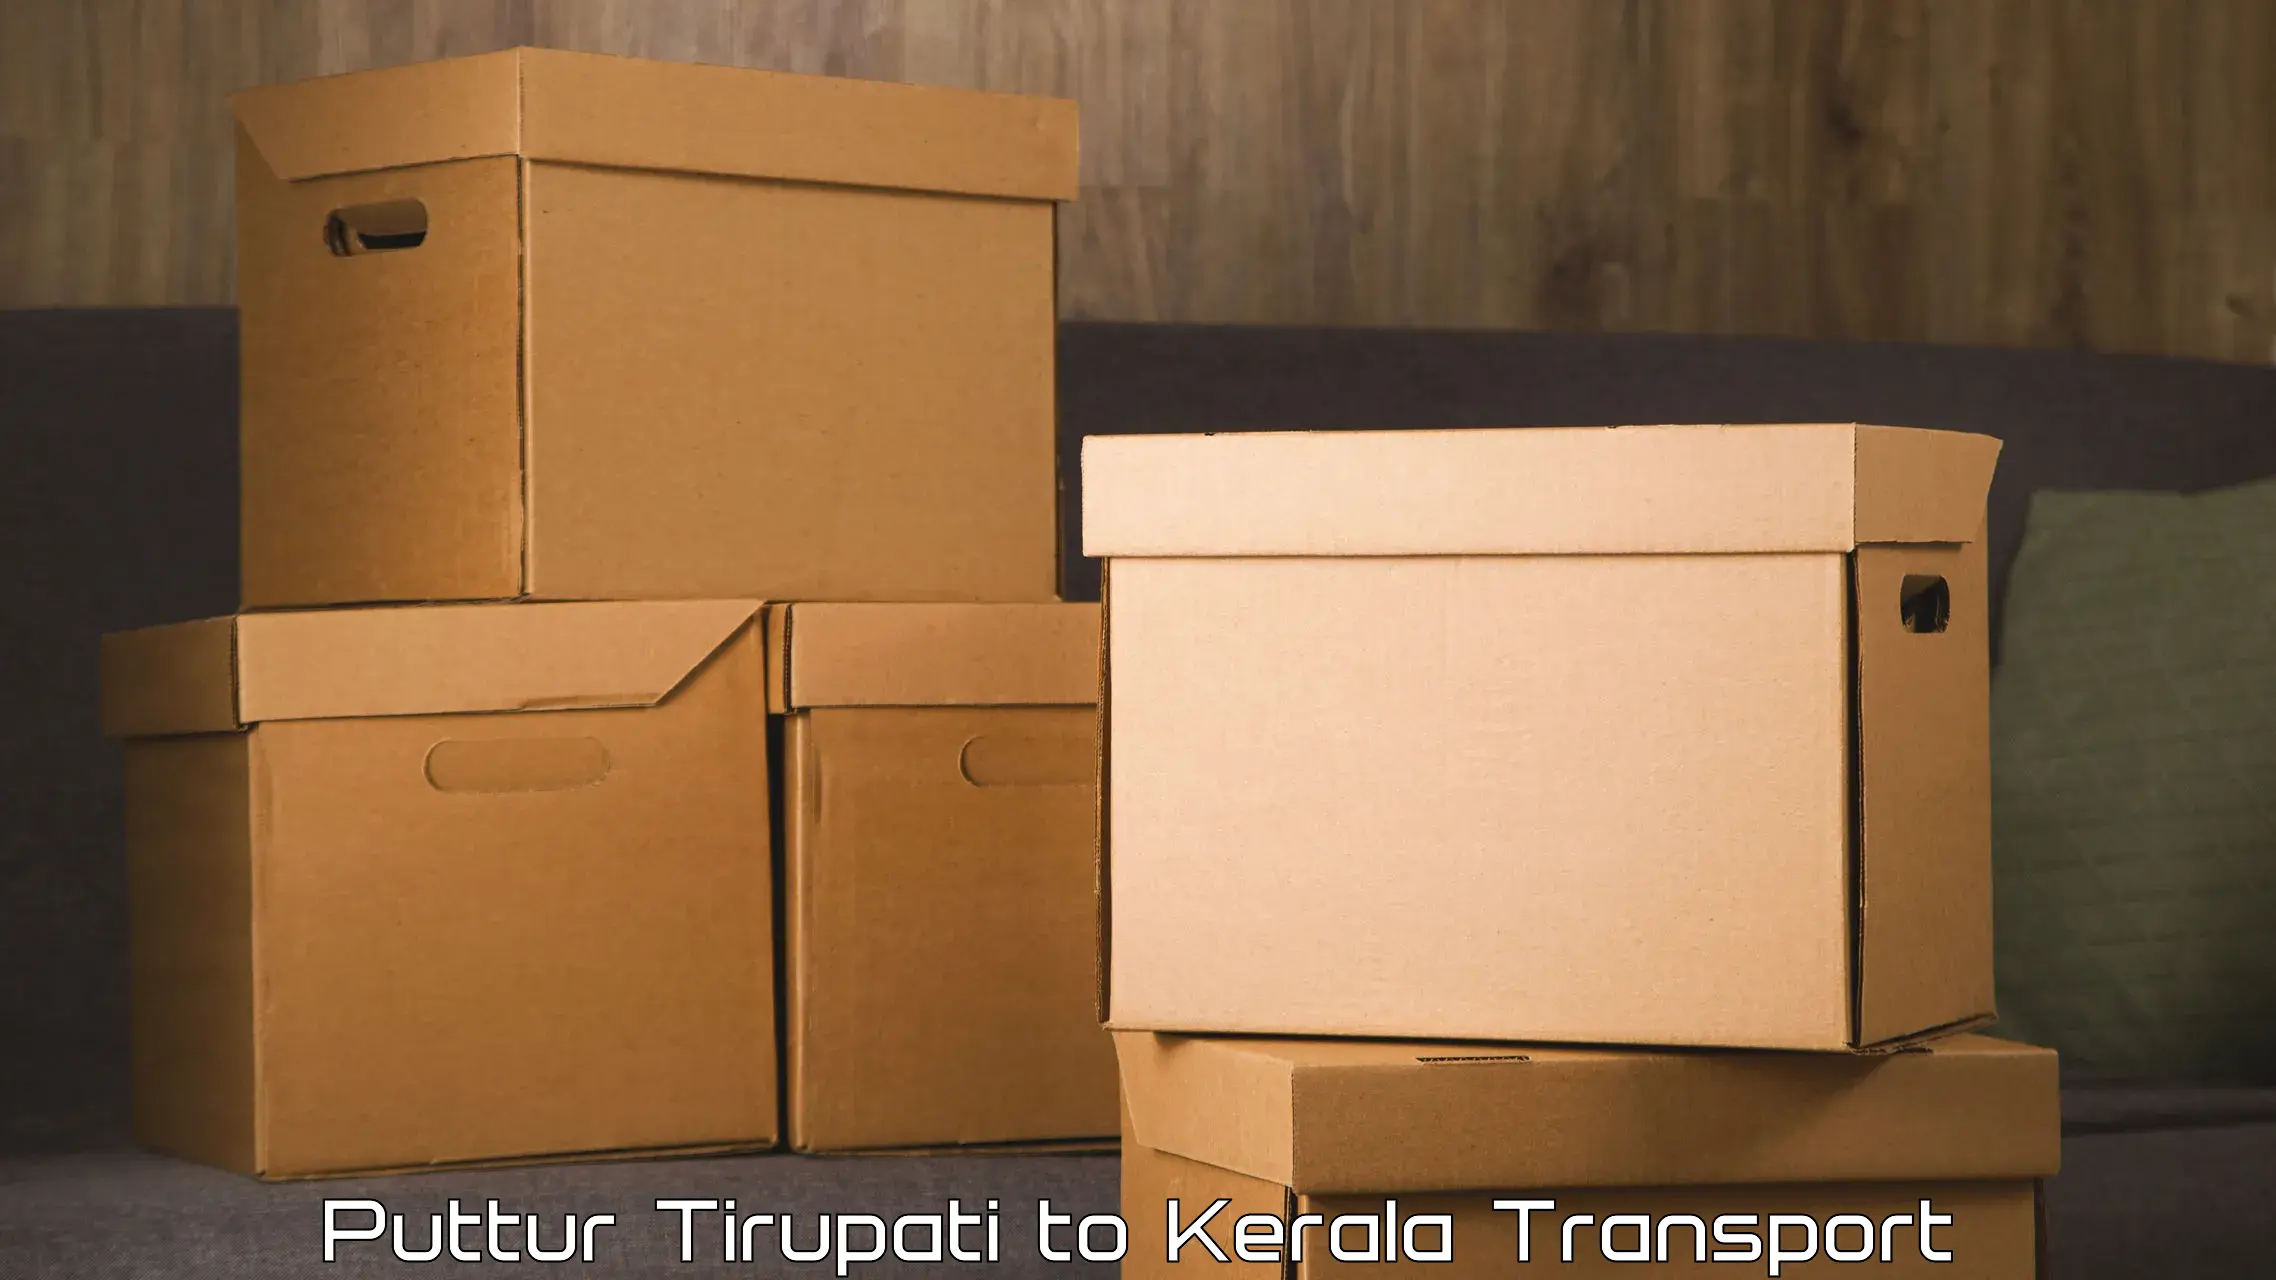 Online transport Puttur Tirupati to Ranni